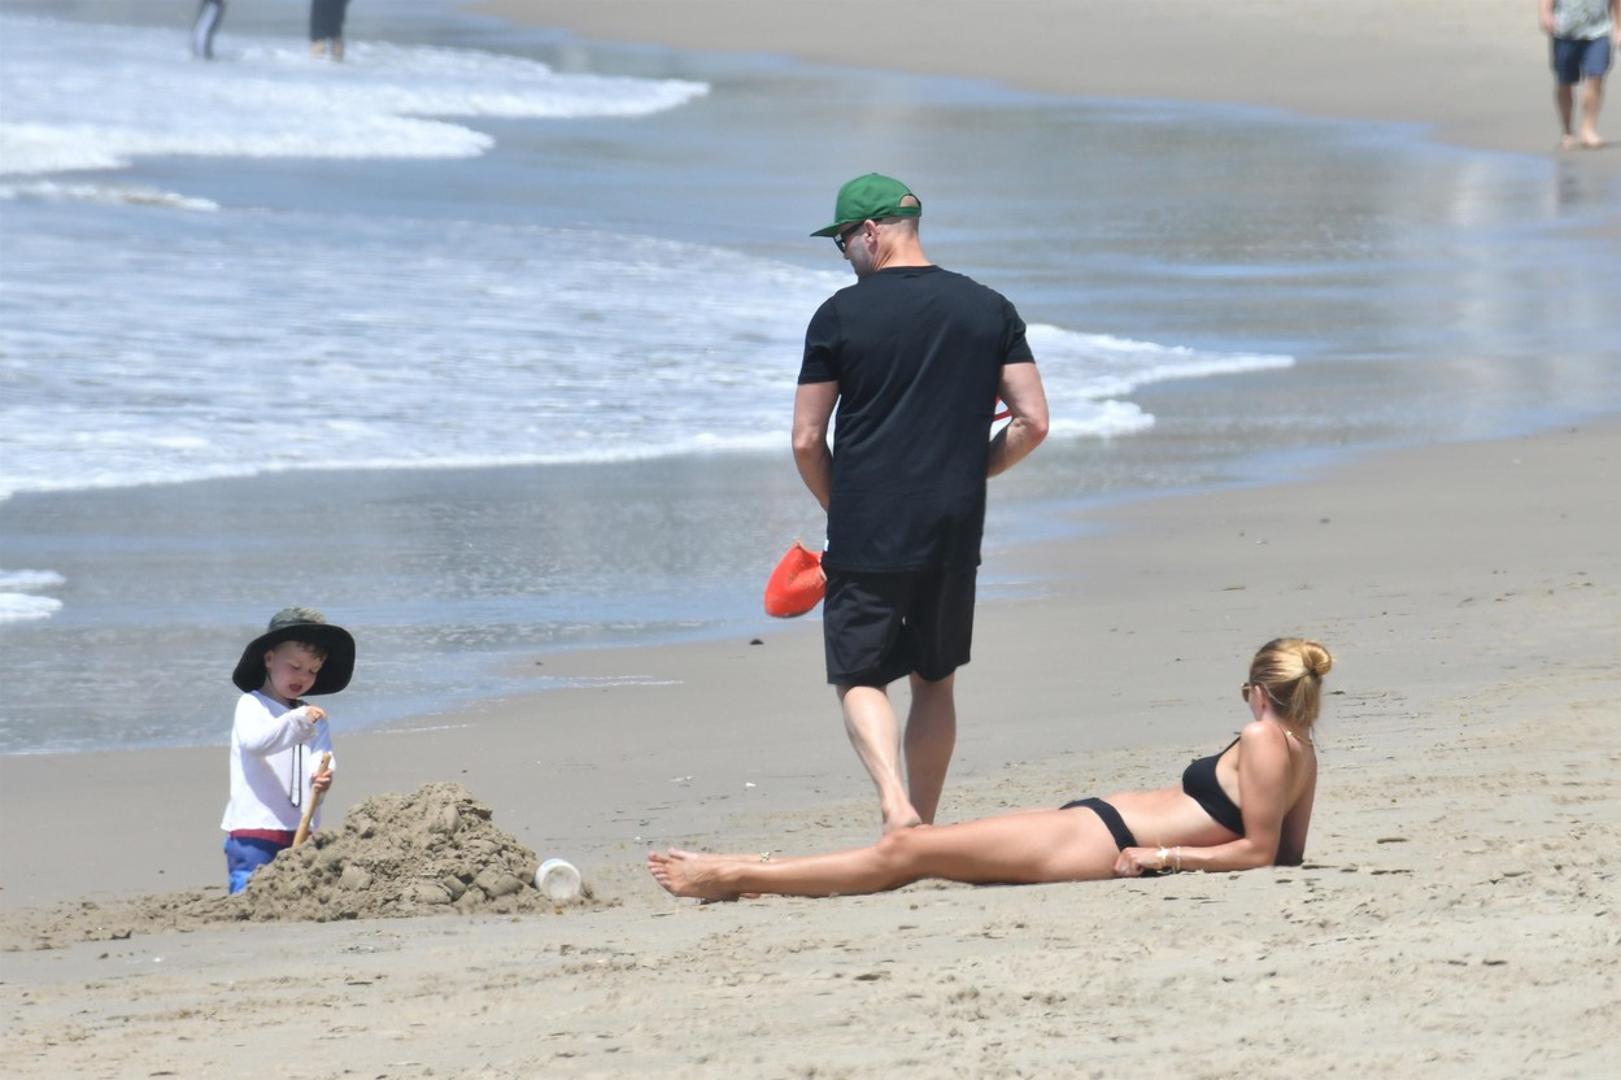 Slavni glumac Jason Statham (53) i njegova zaručnica, model i glumica Rosie Huntington-Whiteley (33) vikend su iskoristili za uživanje na plaži u Malibuu s njihvim dvogodišnjim sinom Jackom. 